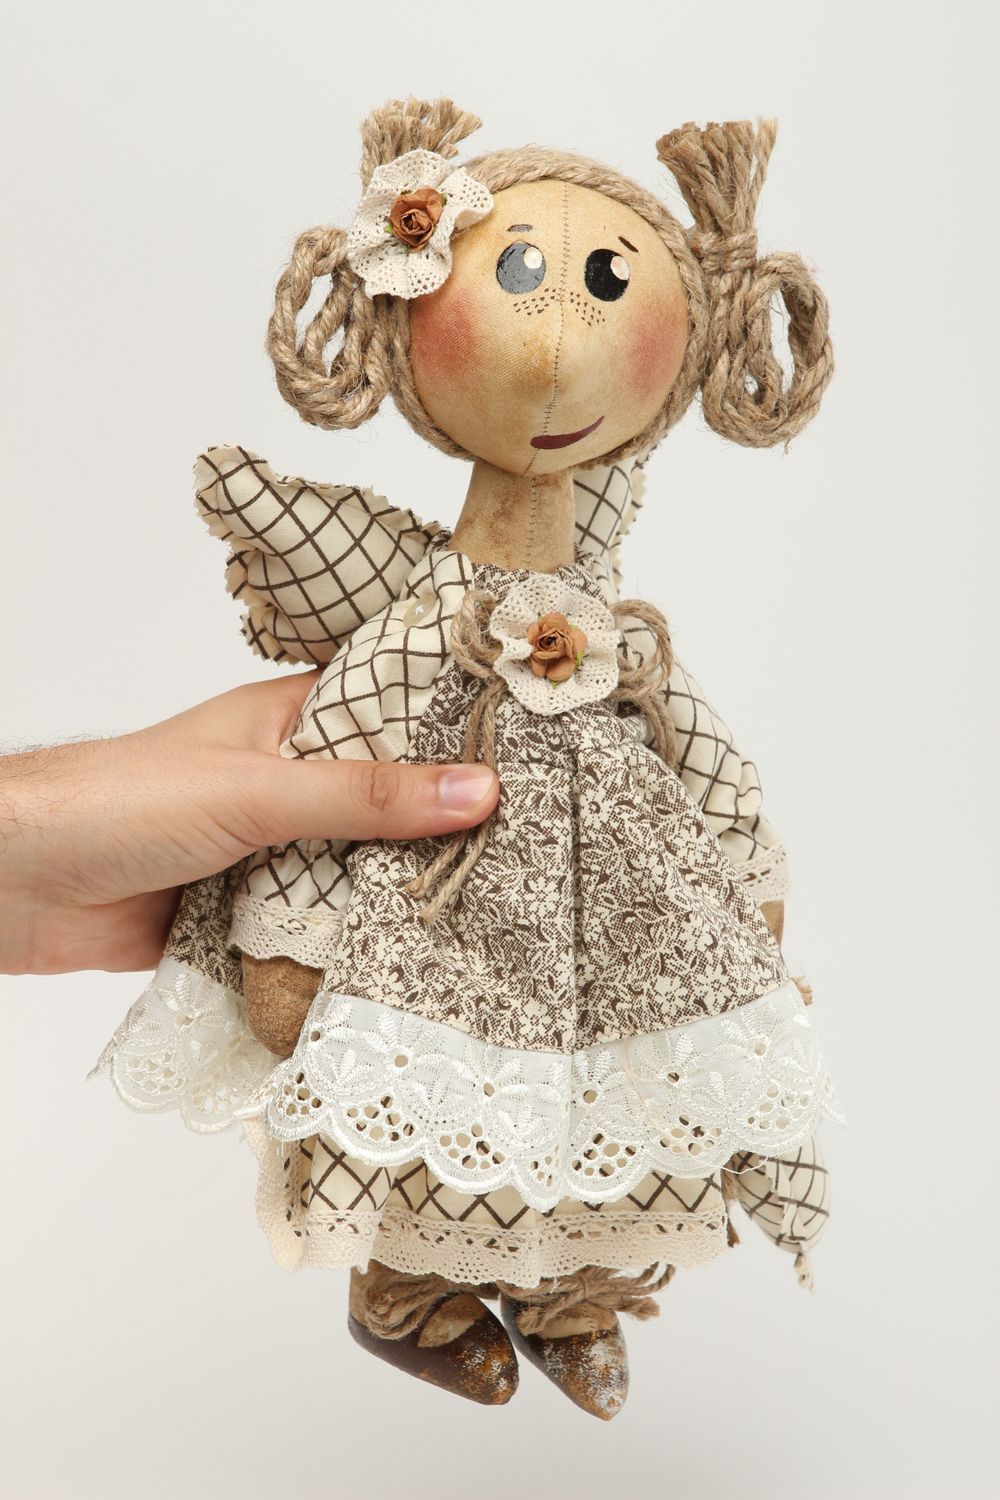 Handmade bemalte Designer Puppe Stoff Spielzeug künstlerische schöne Puppe  foto 5